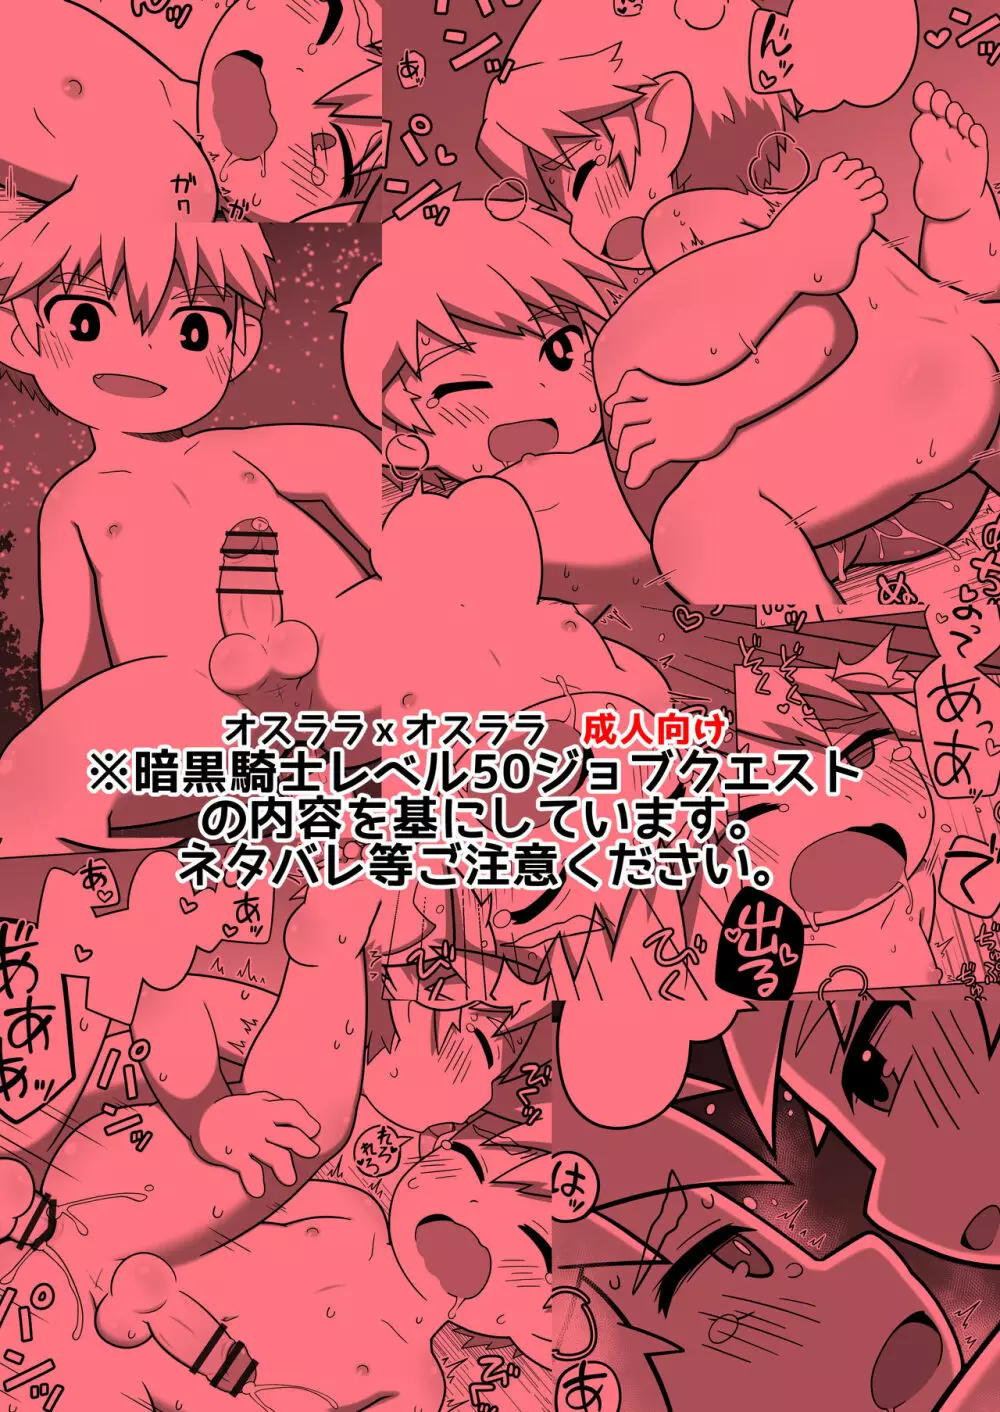 Chikugiri - オスララのスケベ漫画 + extras - page1